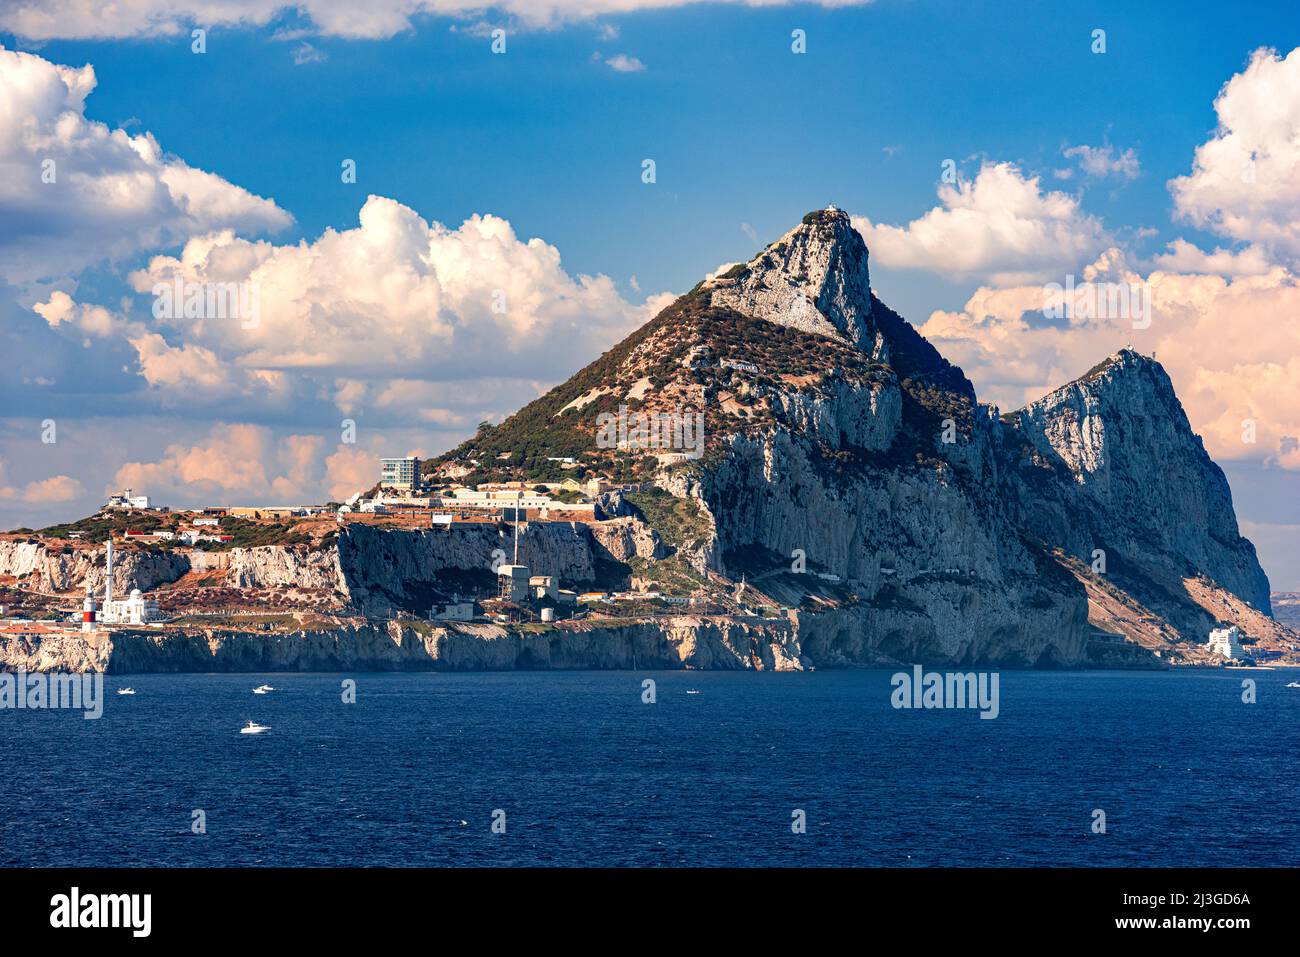 El Peñón de Gibraltar, un Territorio Británico de Ultramar situado en el extremo sur de la Península Ibérica. Foto de stock